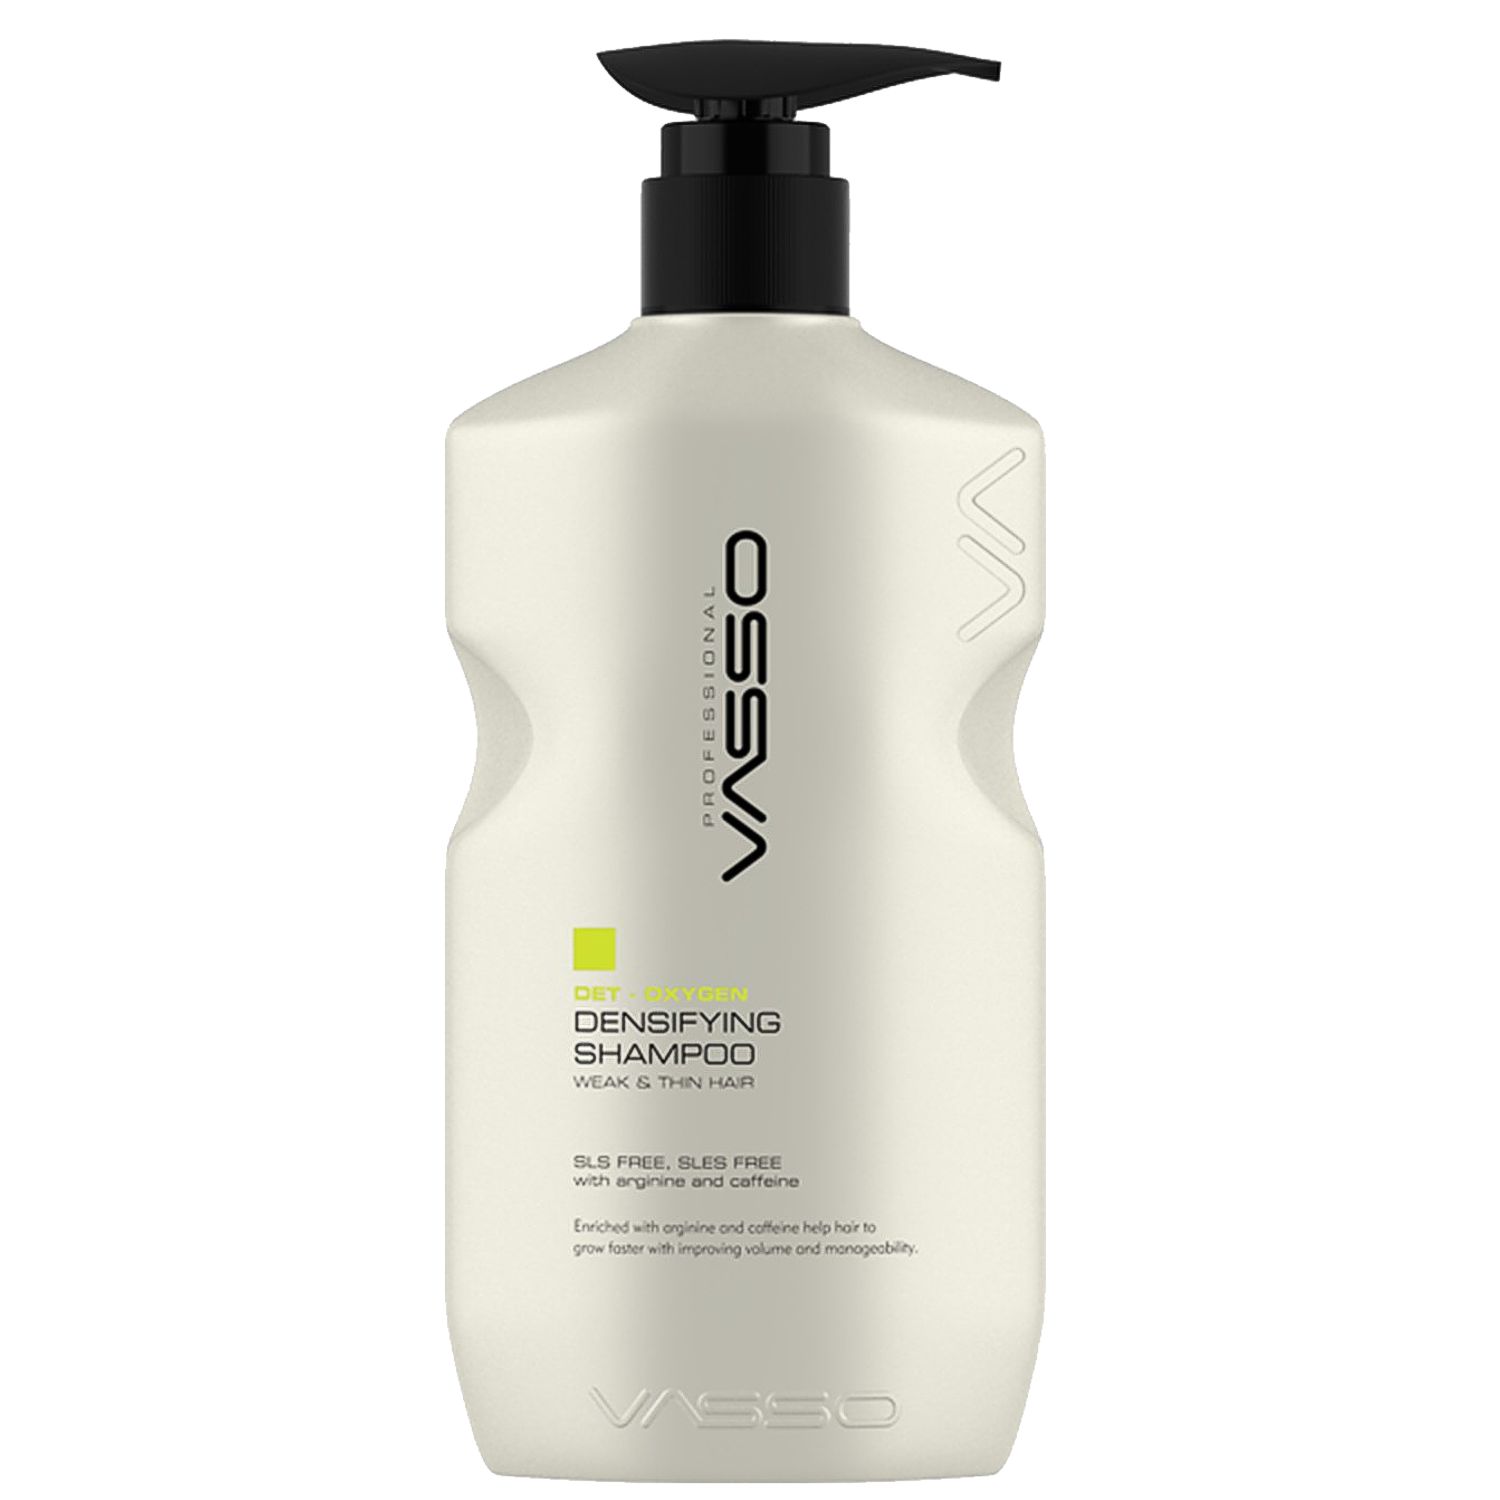 VASSO DET-OXYGEN Densifying Shampoo 500 ml